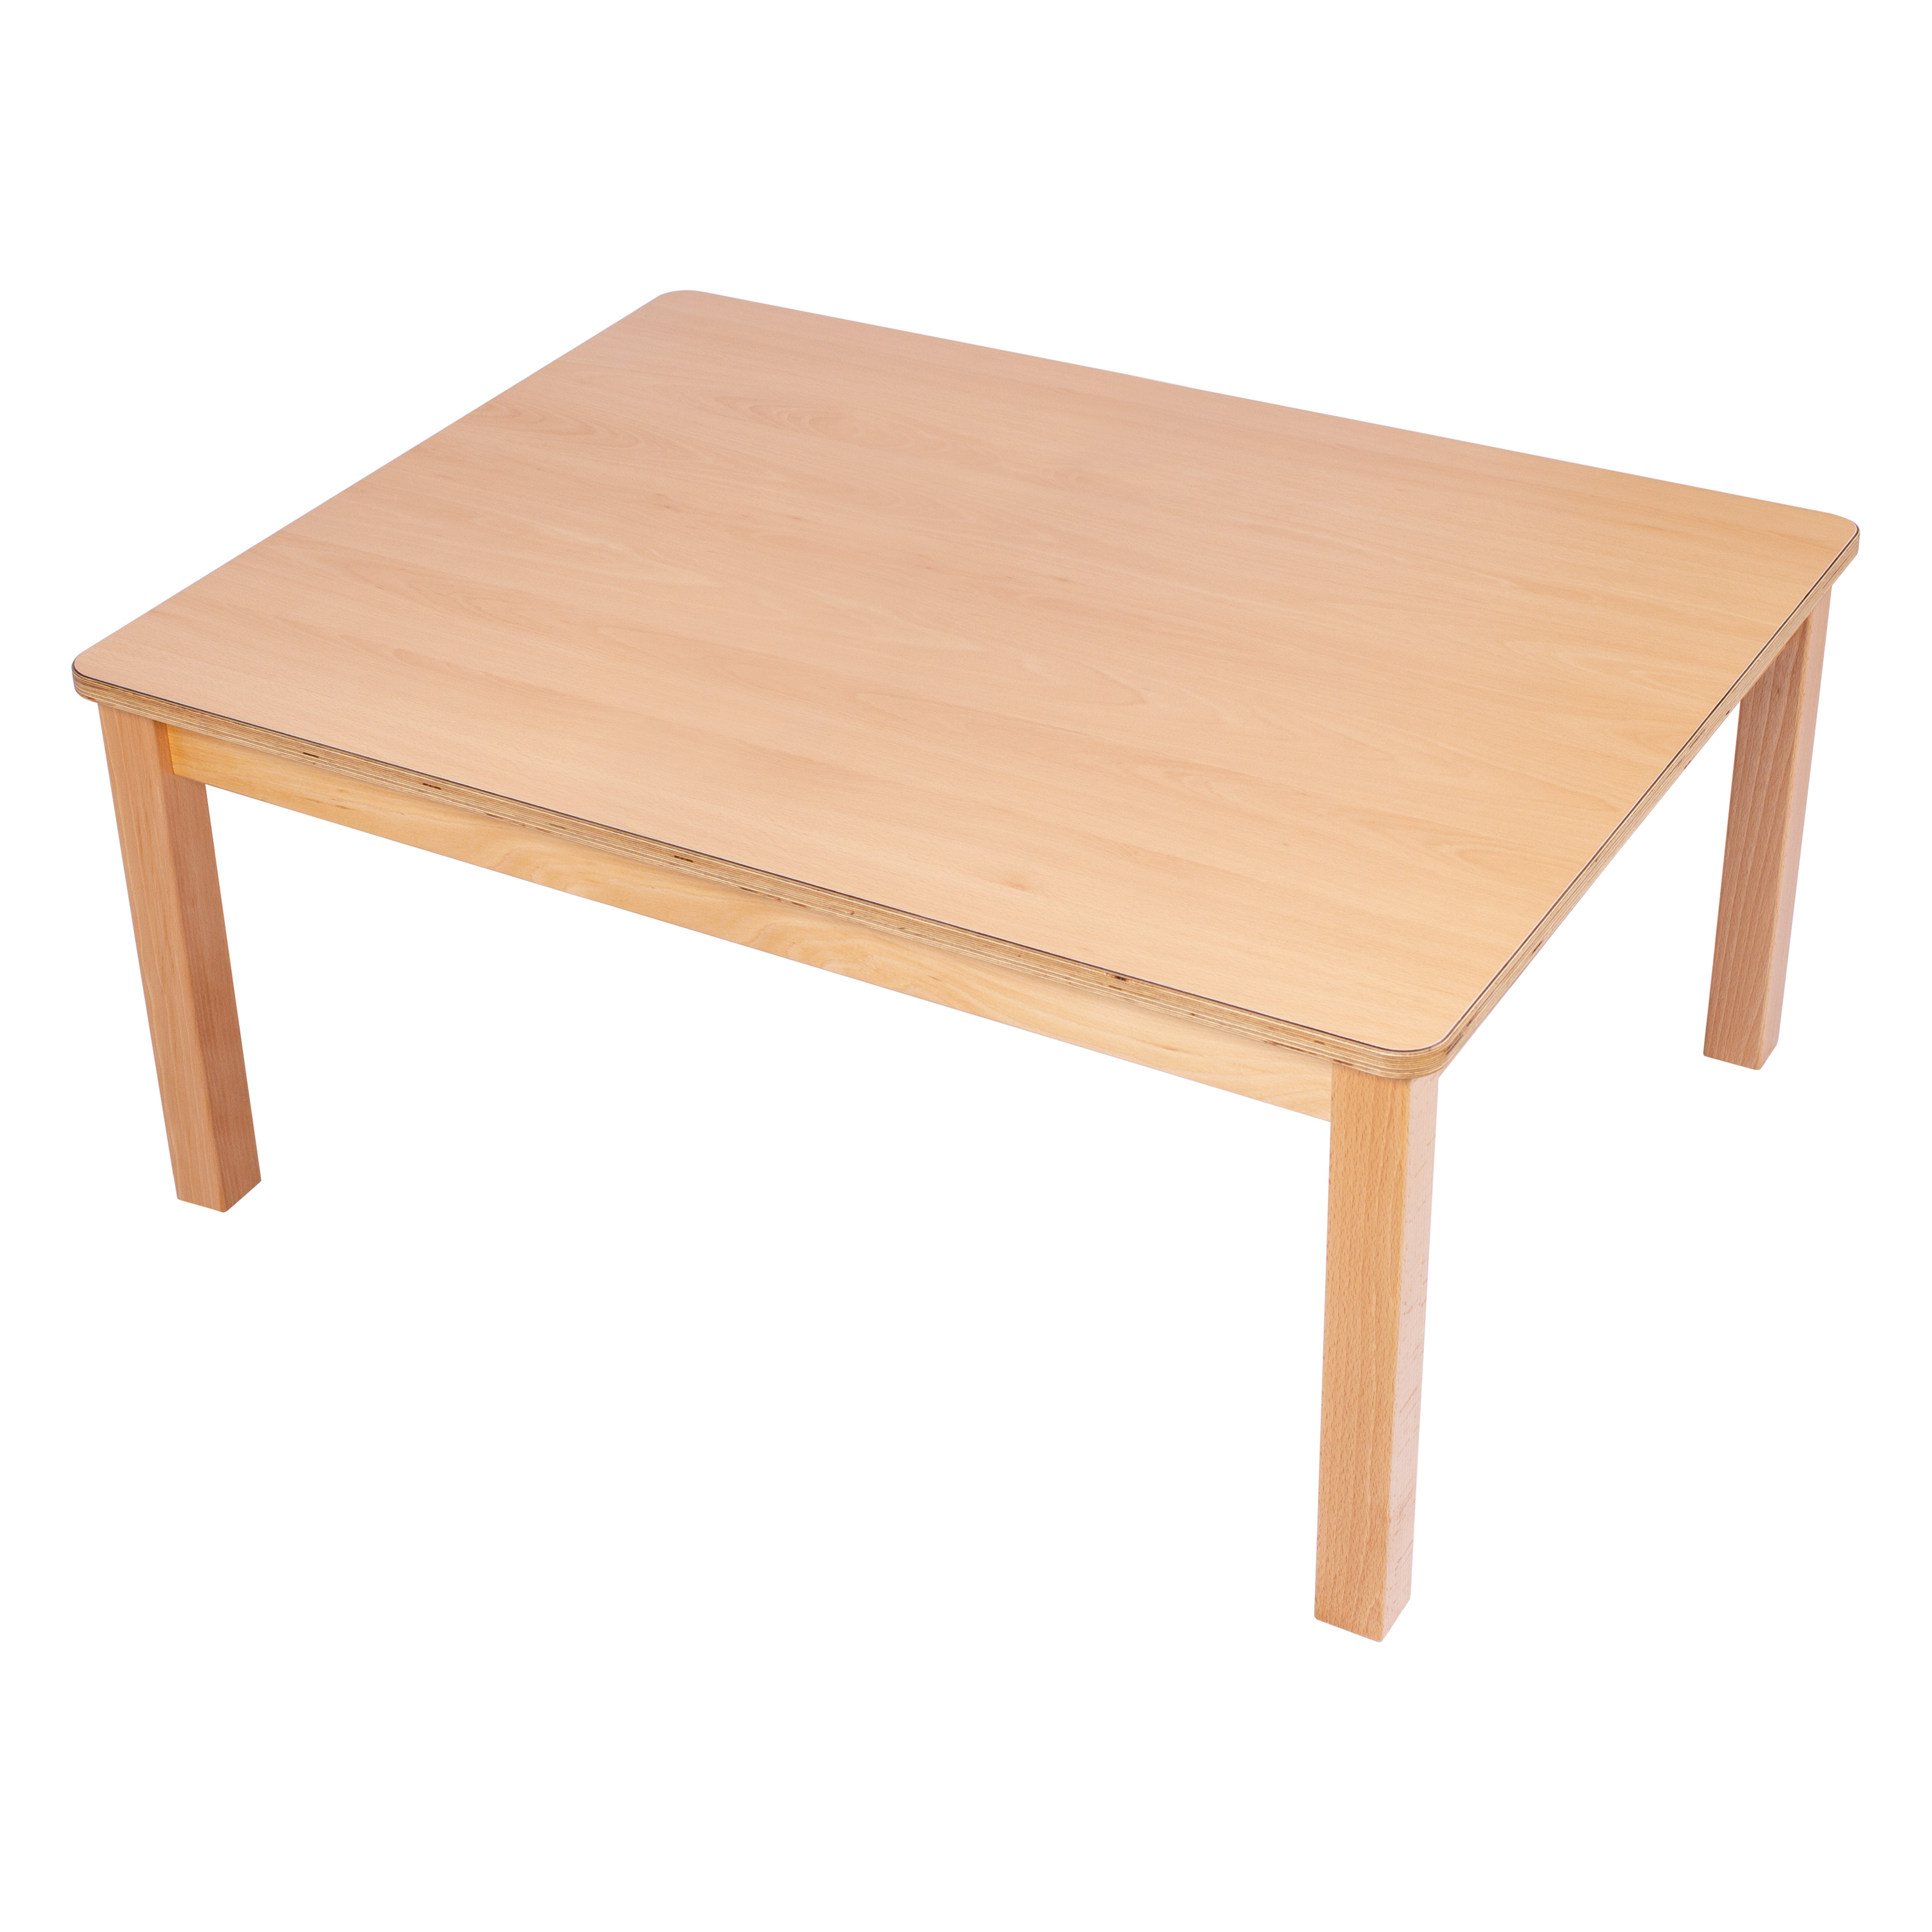 U3-Rechteck-Tisch 120 x 80 cm, Ecken gerundet, H: 34 cm